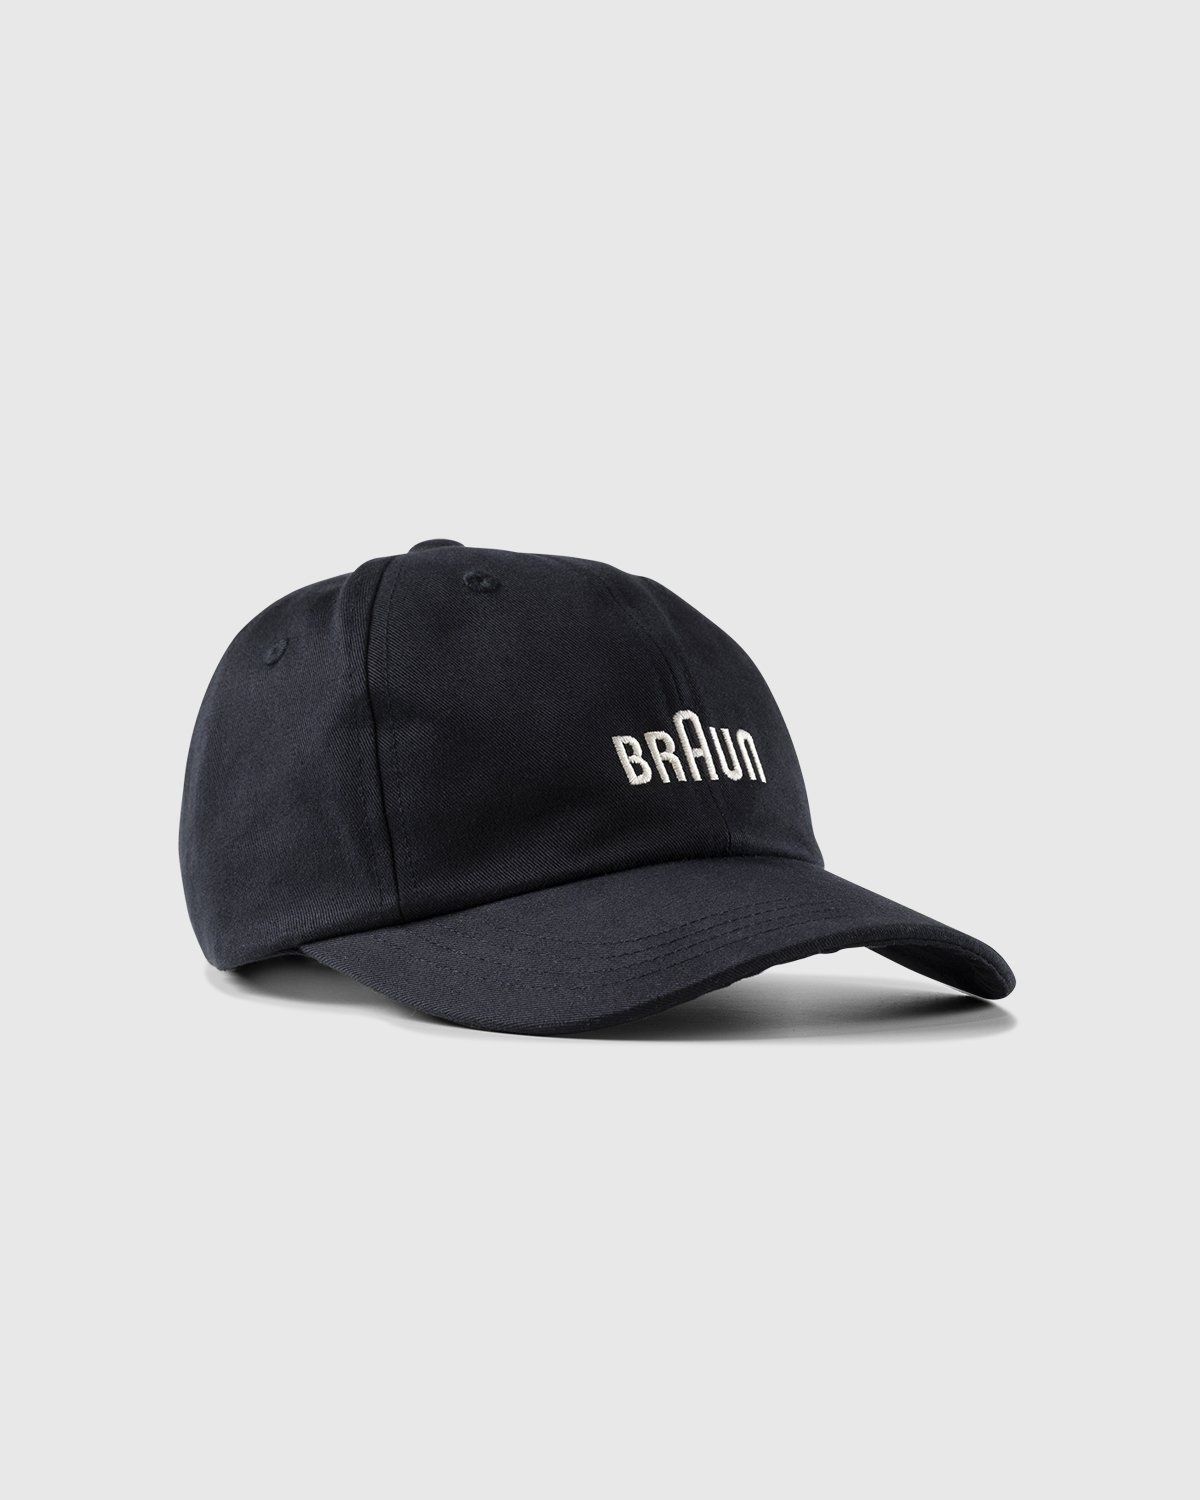 BRAUN x Highsnobiety – Logo Cap Black | Highsnobiety Shop